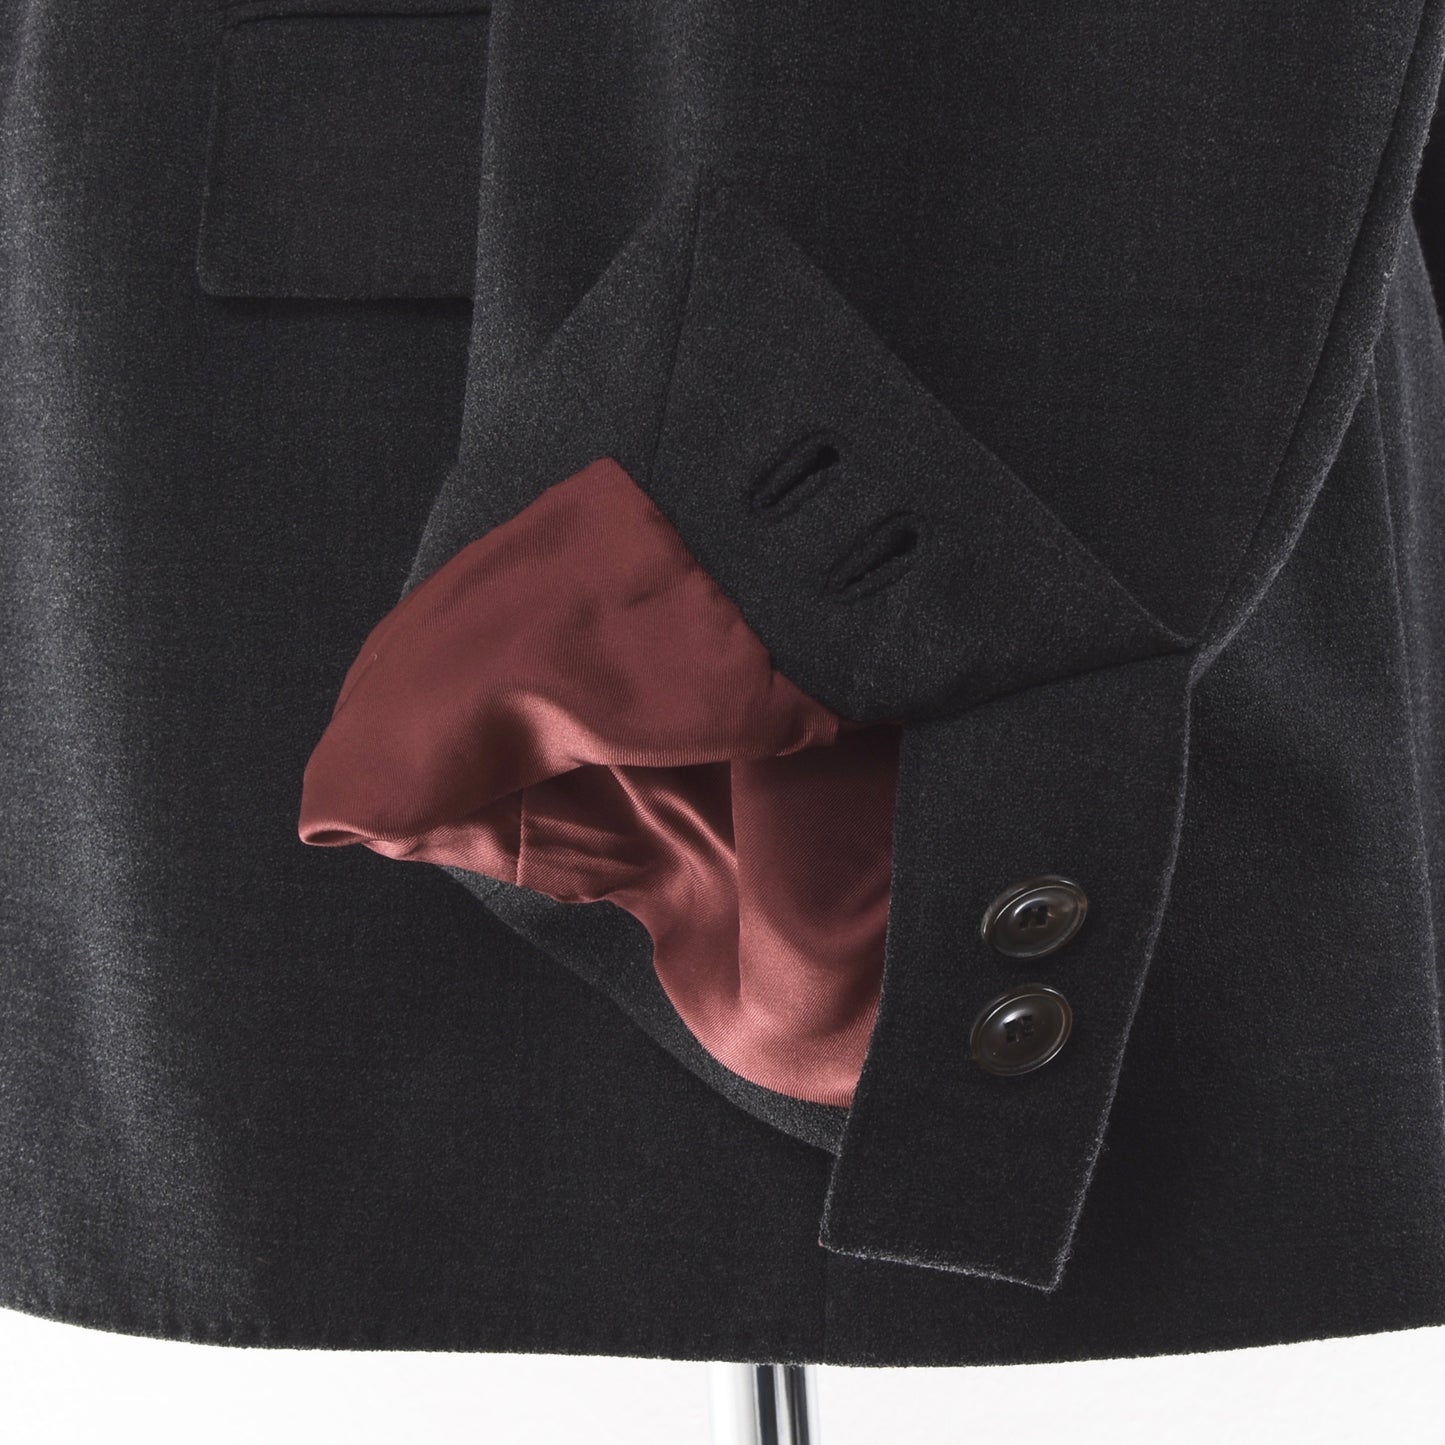 New Gössl Wool Janker/Jacket Size 52 - Grey